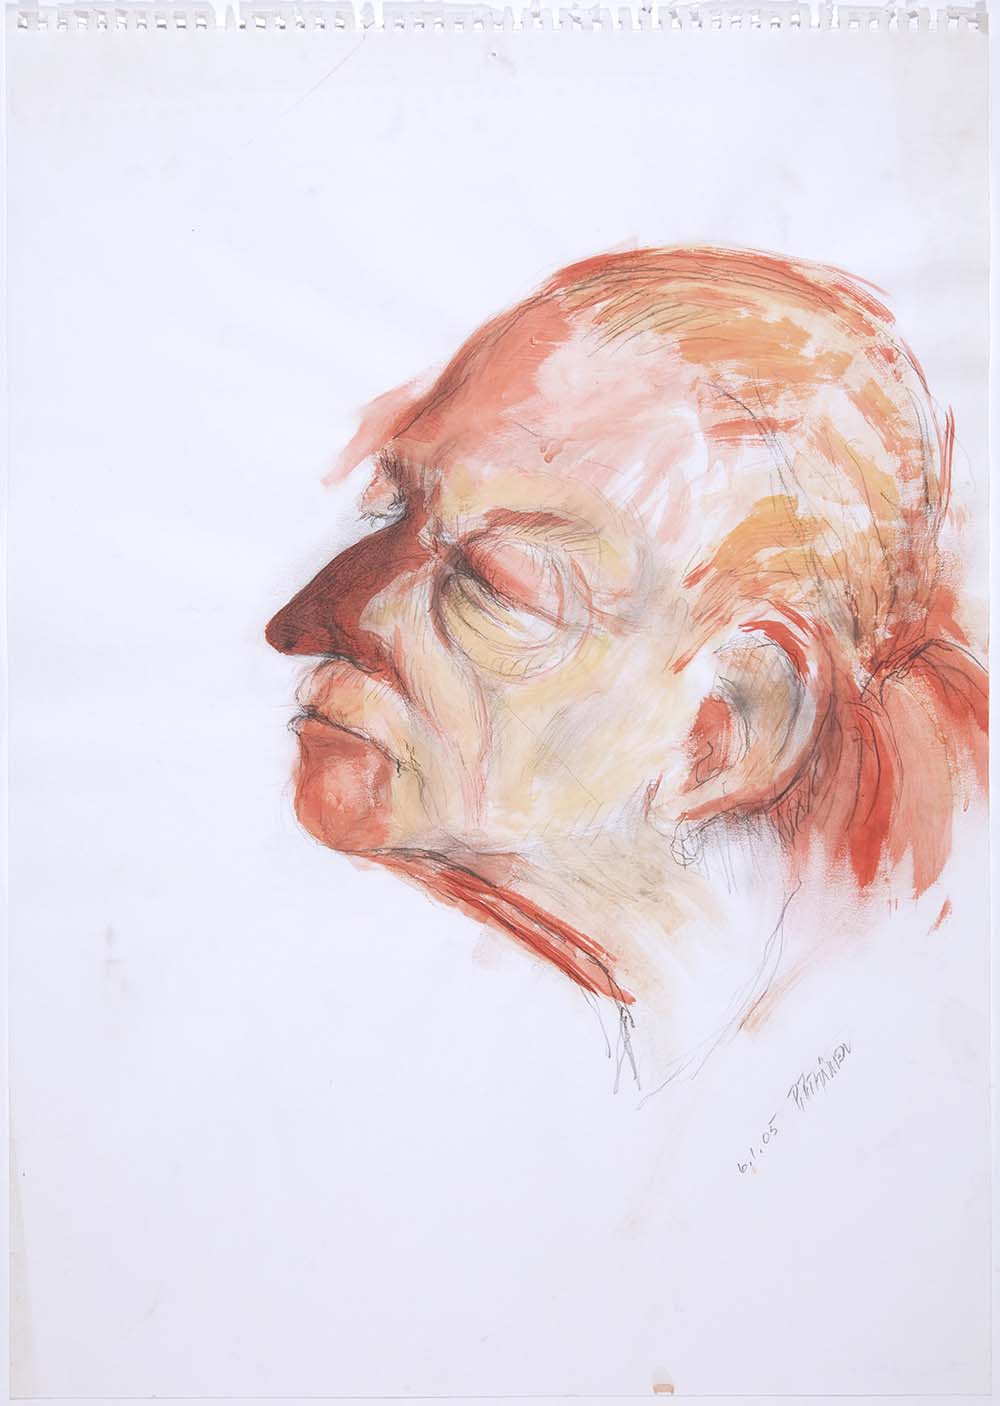 Pekka Pitkänen, Kain Tapper, 2005, gouache on paper, 59 x 42 cm. Photo: Saara Salmi